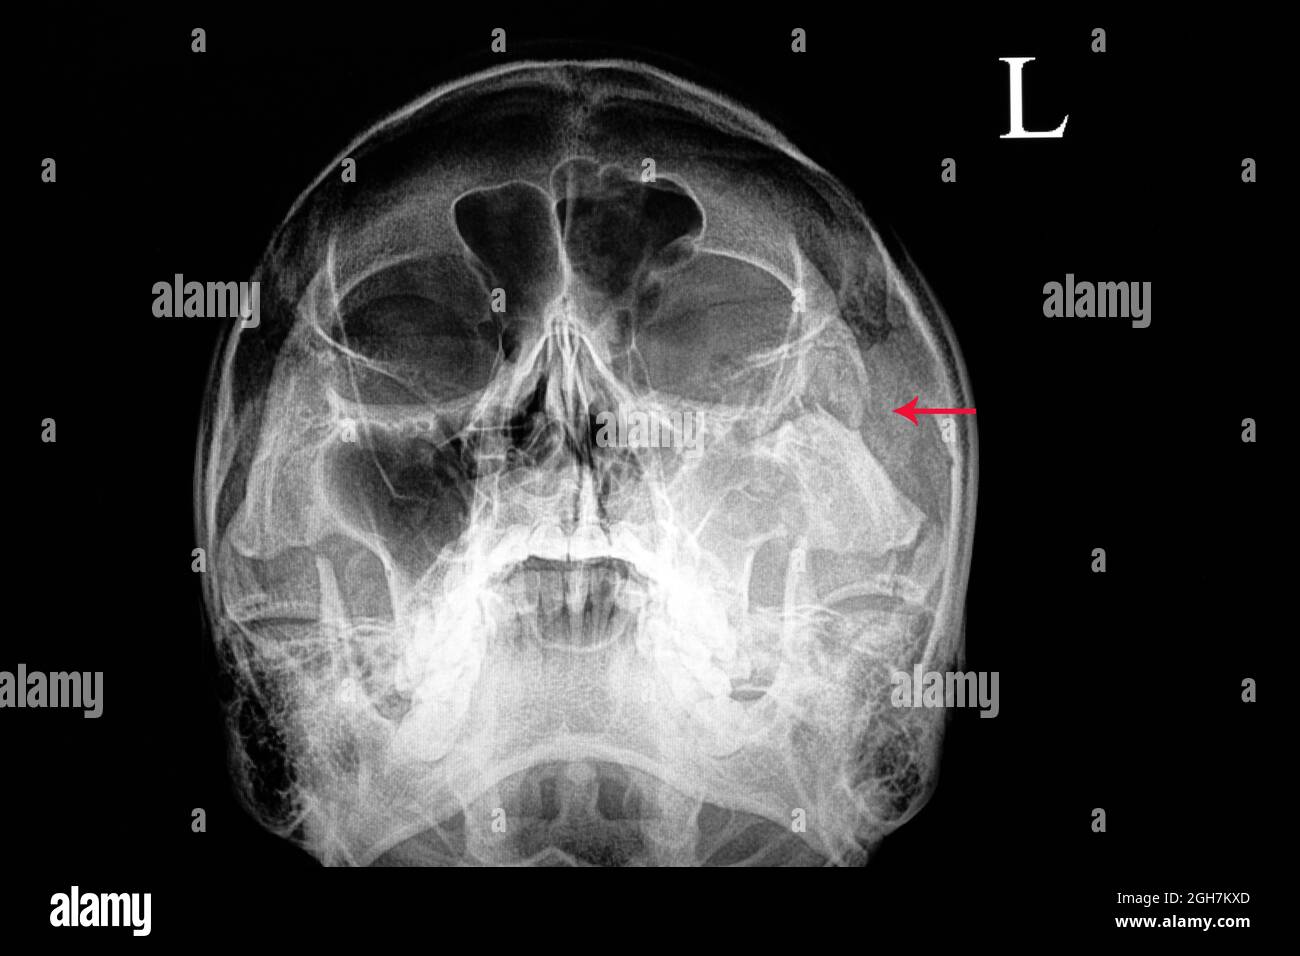 pellicola radiogena di un cranio di un paziente affetto da lesione traumatica che mostra fratture dell'osso zigomatico sinistro e sinusite traumatica Foto Stock